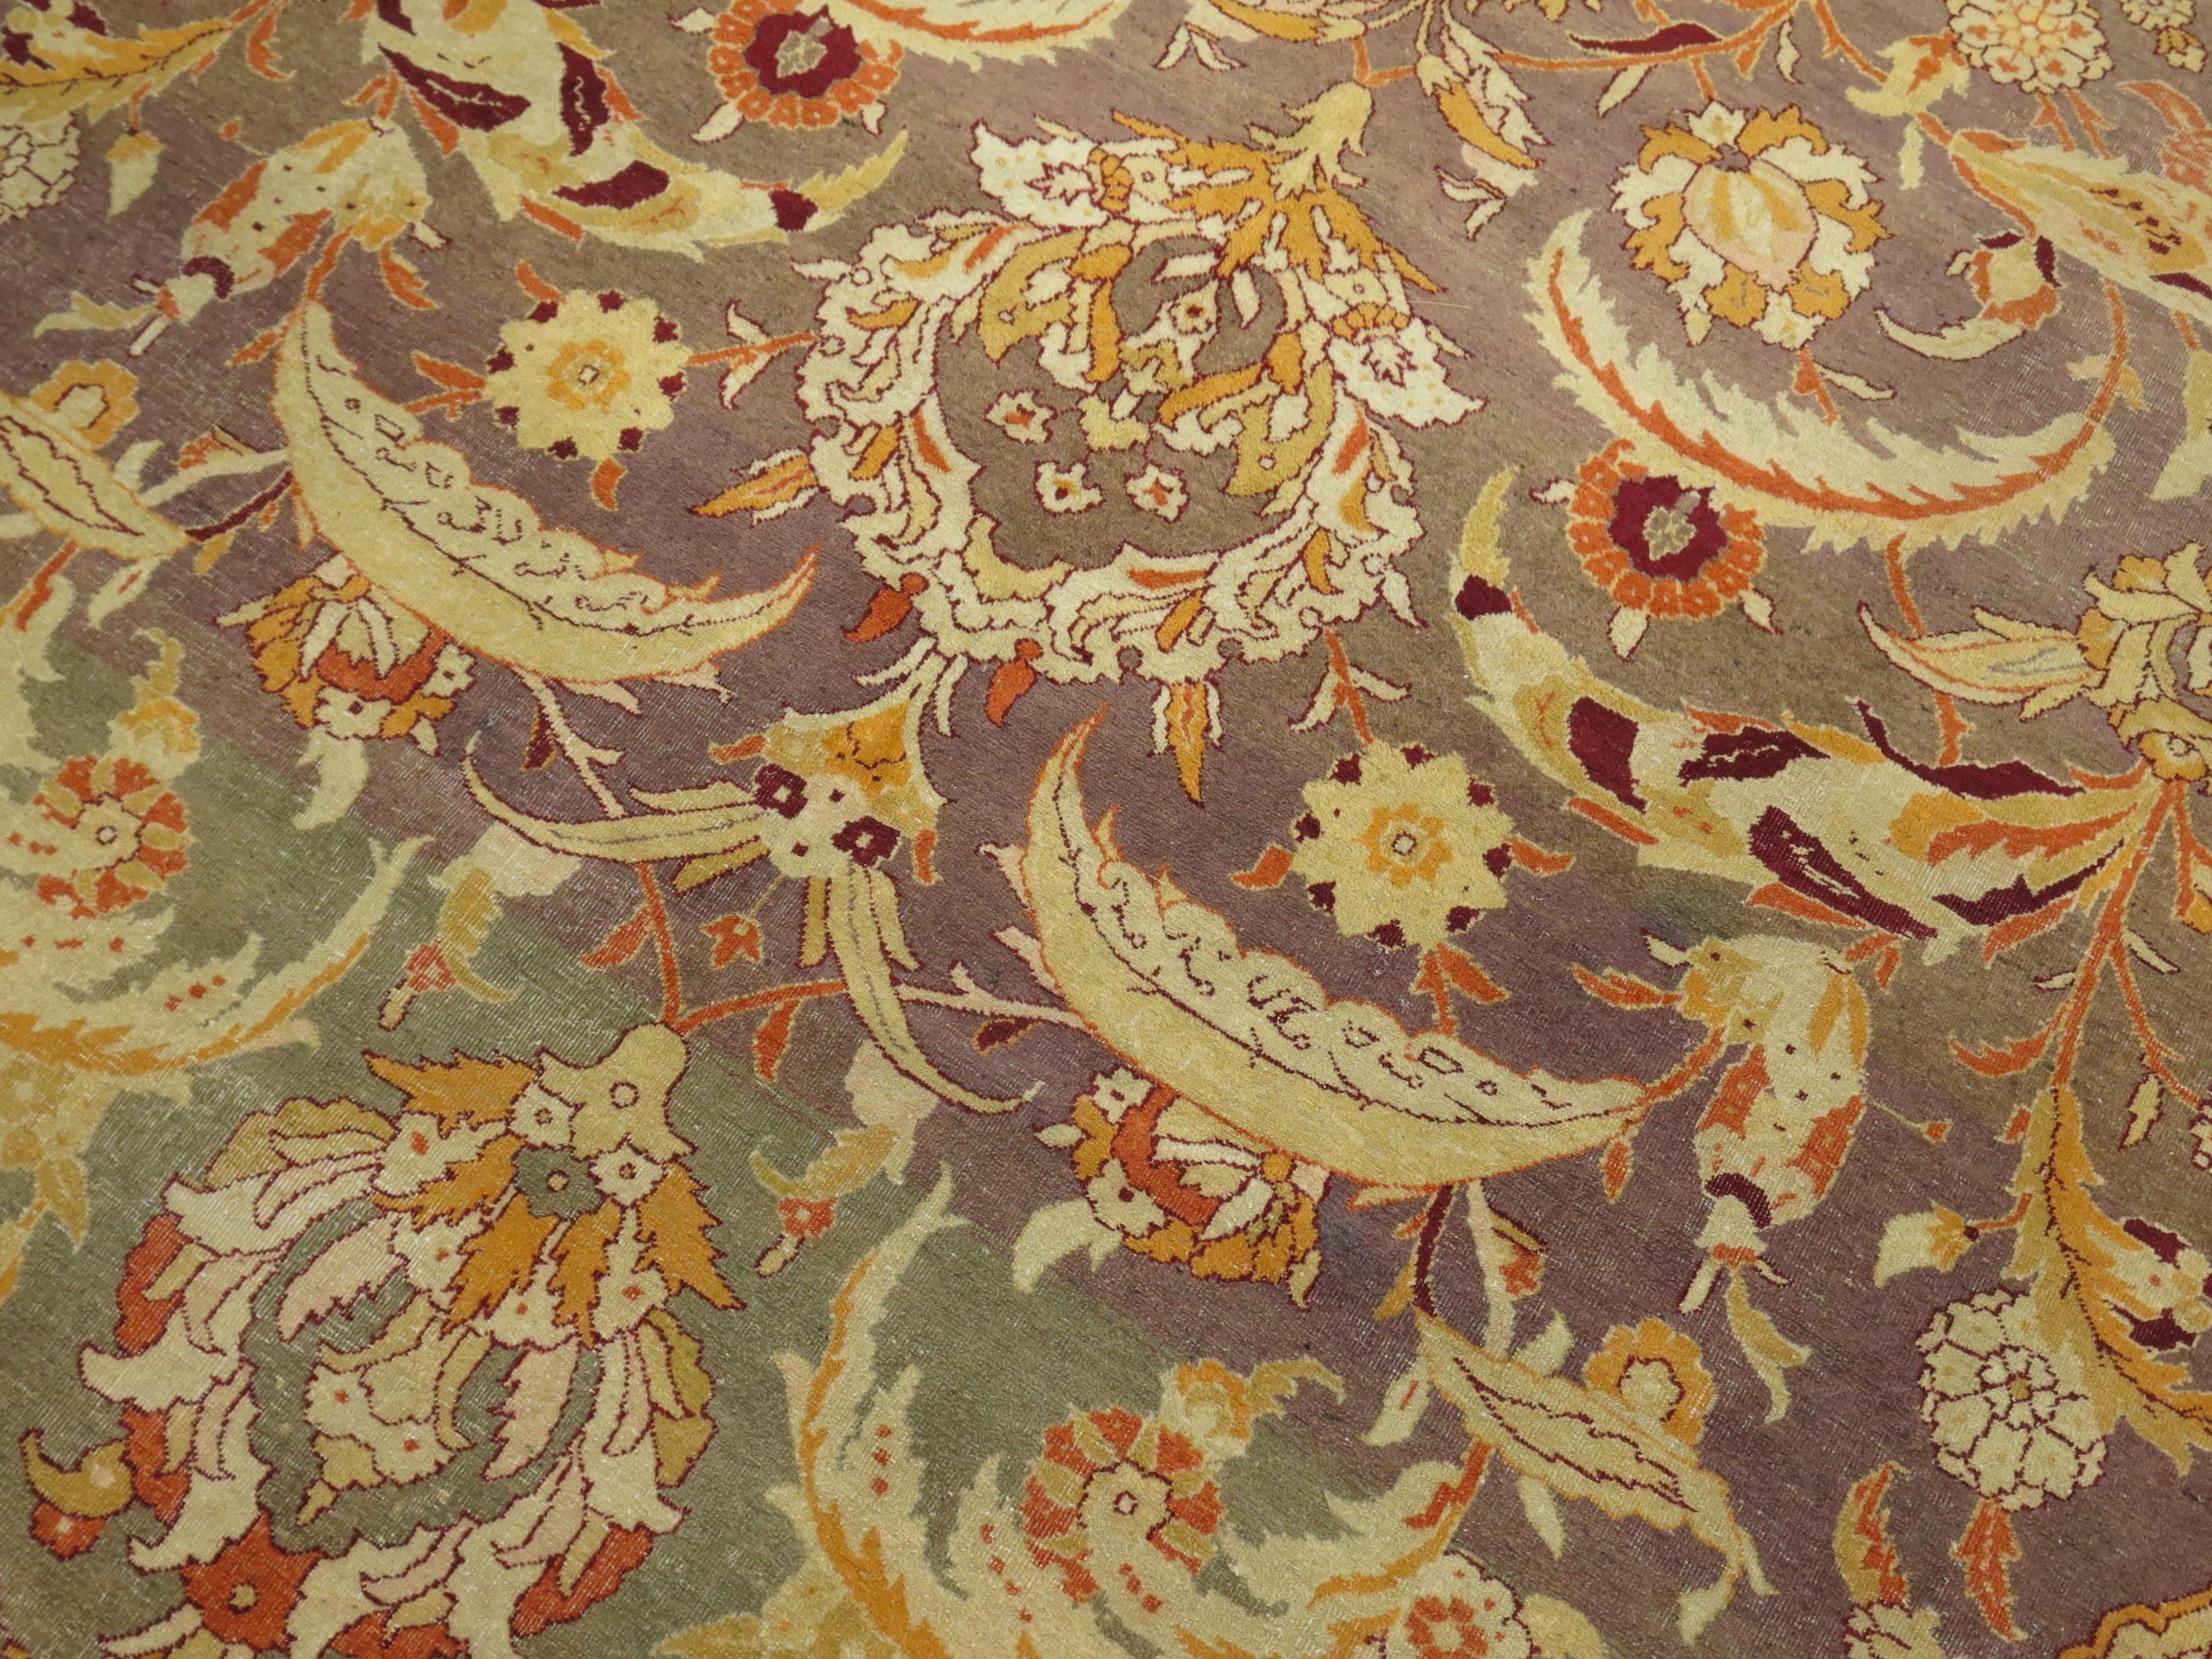 Ein authentisches indisches Amritsar des frühen 20. Jahrhunderts.

Eine Elitegruppe der allerfeinsten Teppiche aus der Agra-Region des 19. Jahrhunderts wird der Stadt Amritsar zugeschrieben. Diese sind bekannt für ihre extrem feine Handwerkskunst,